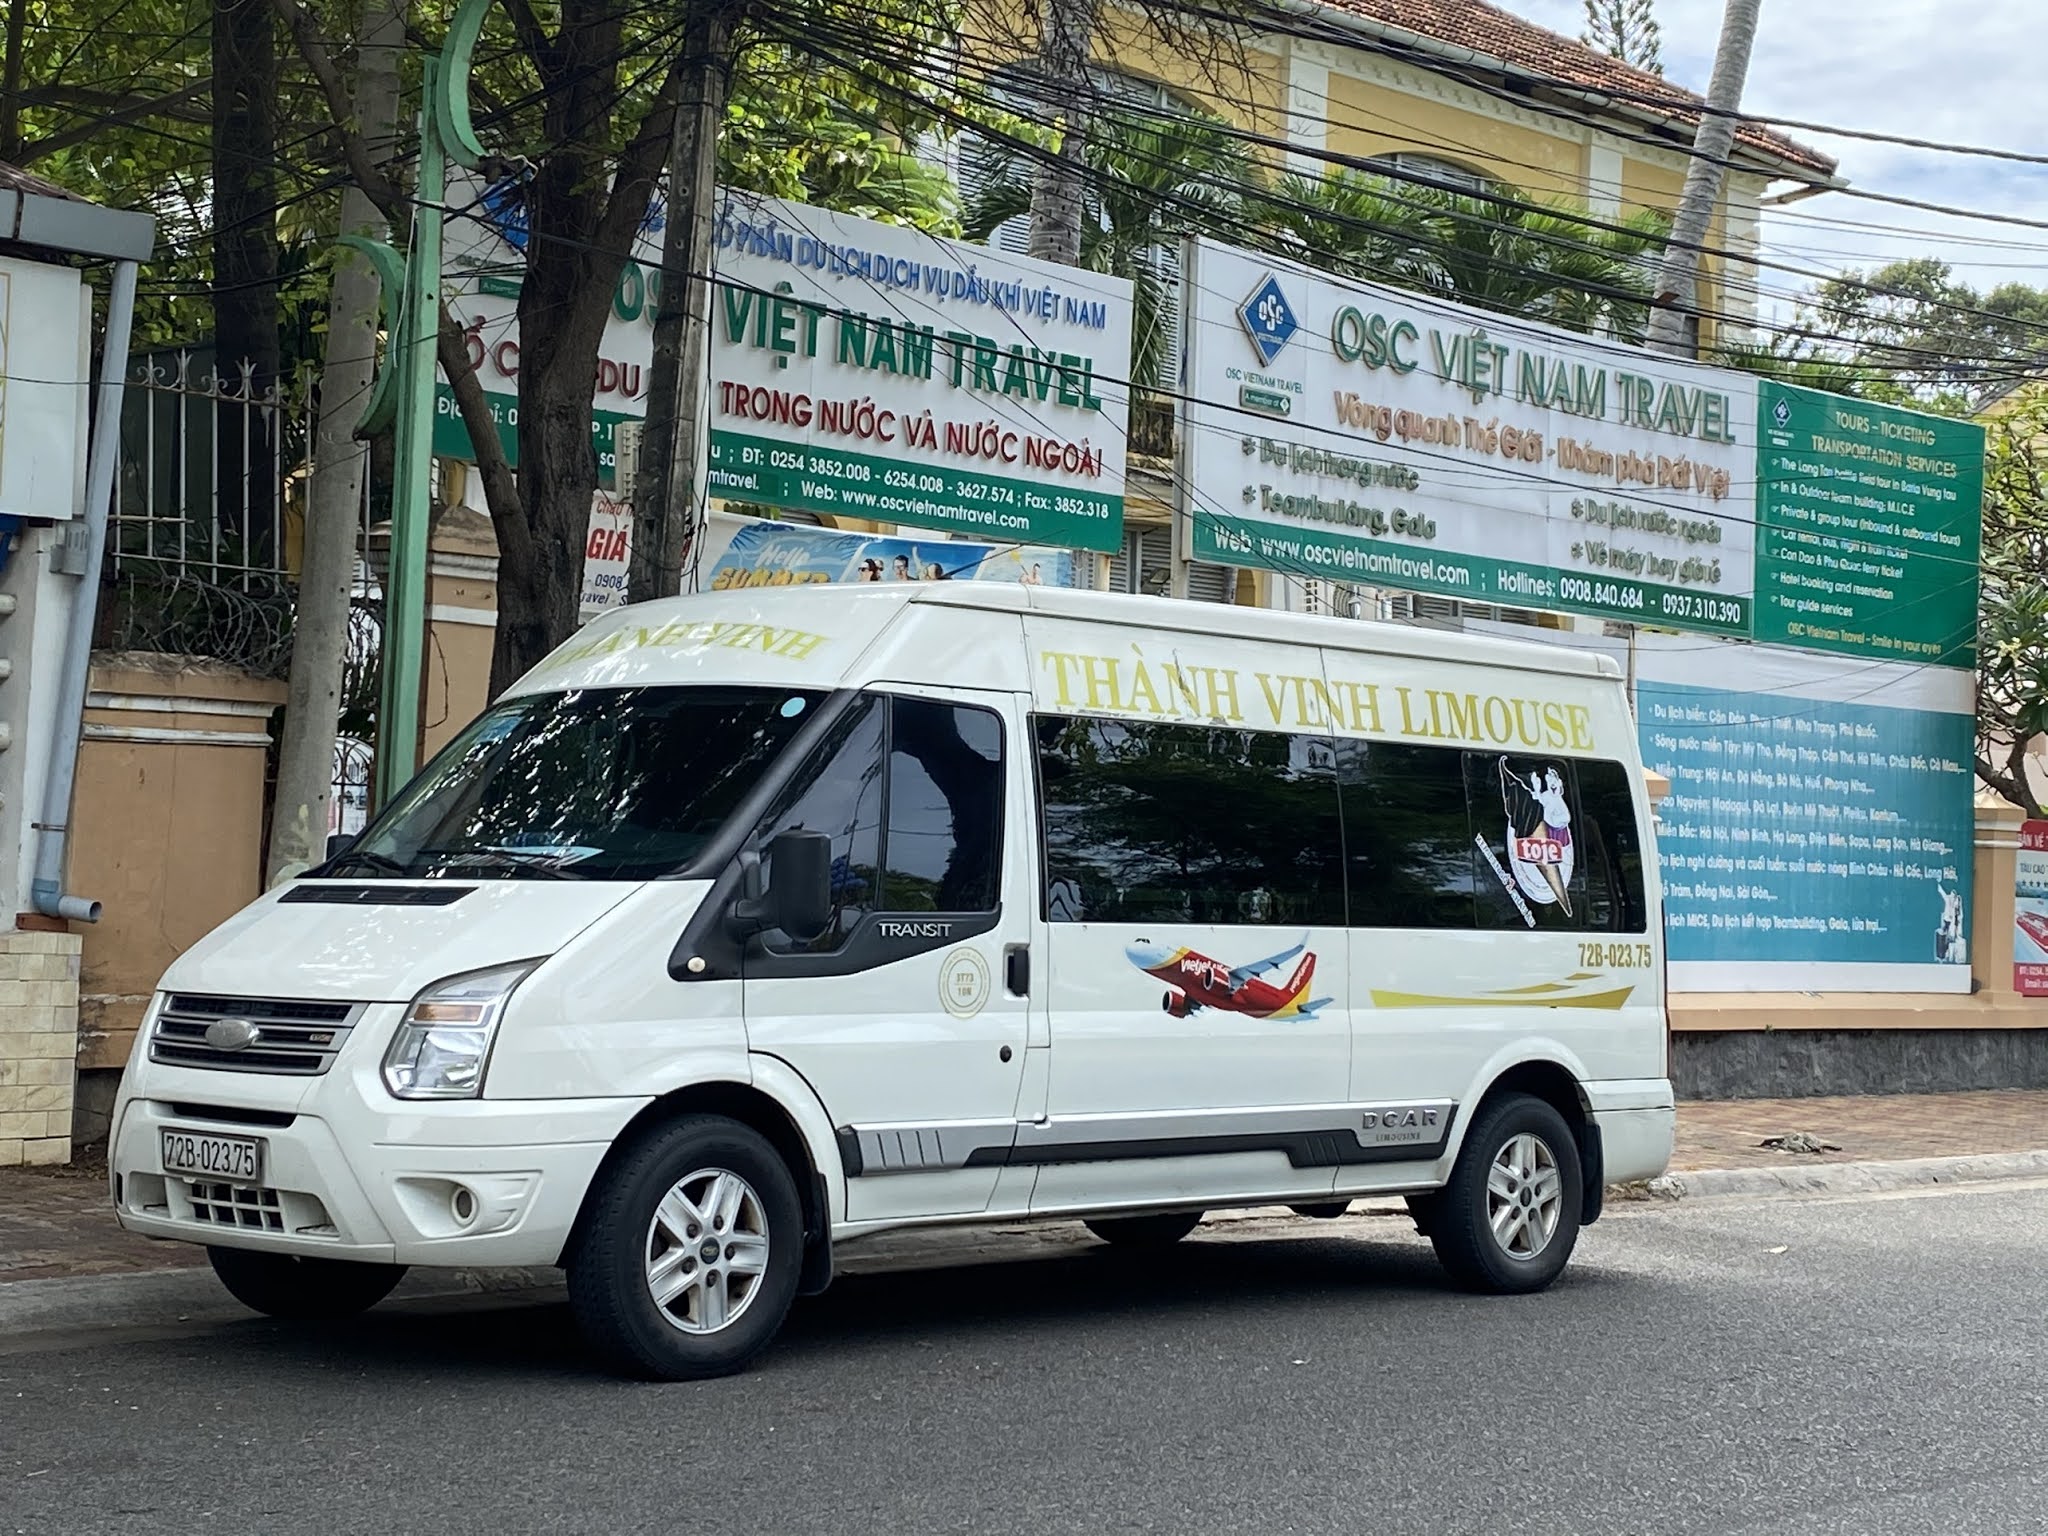 Lộ trình xe limousine Thành Vinh Vũng Tàu - Sân bay Tân Sơn Nhất